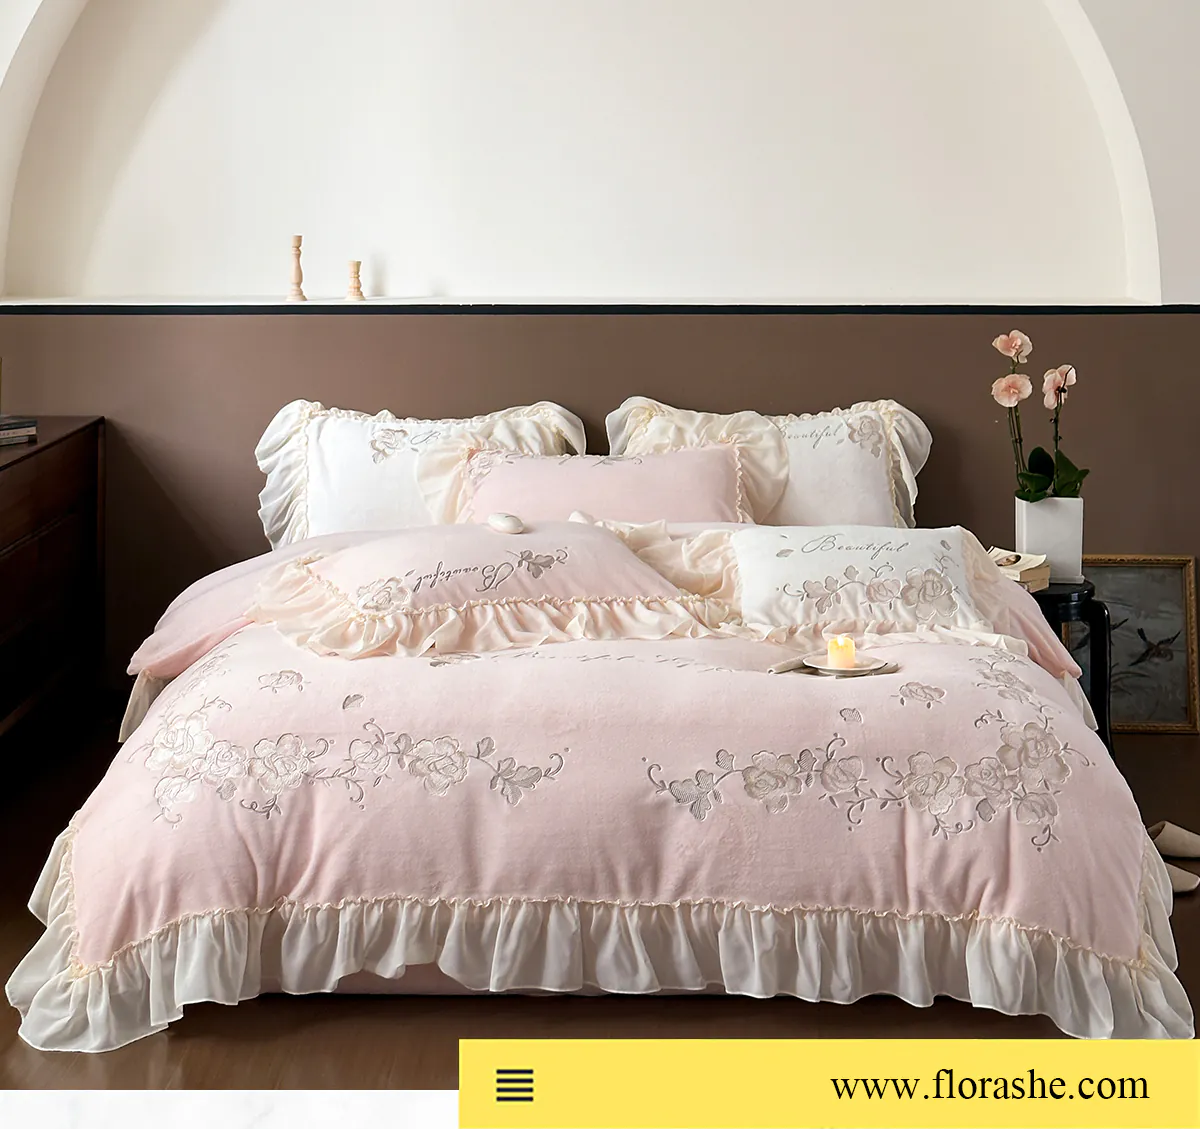 Aesthetic-Soft-Milk-Fiber-Duvet-Cover-Bed-Sheet-Pillowcases-4-Pcs-Set09